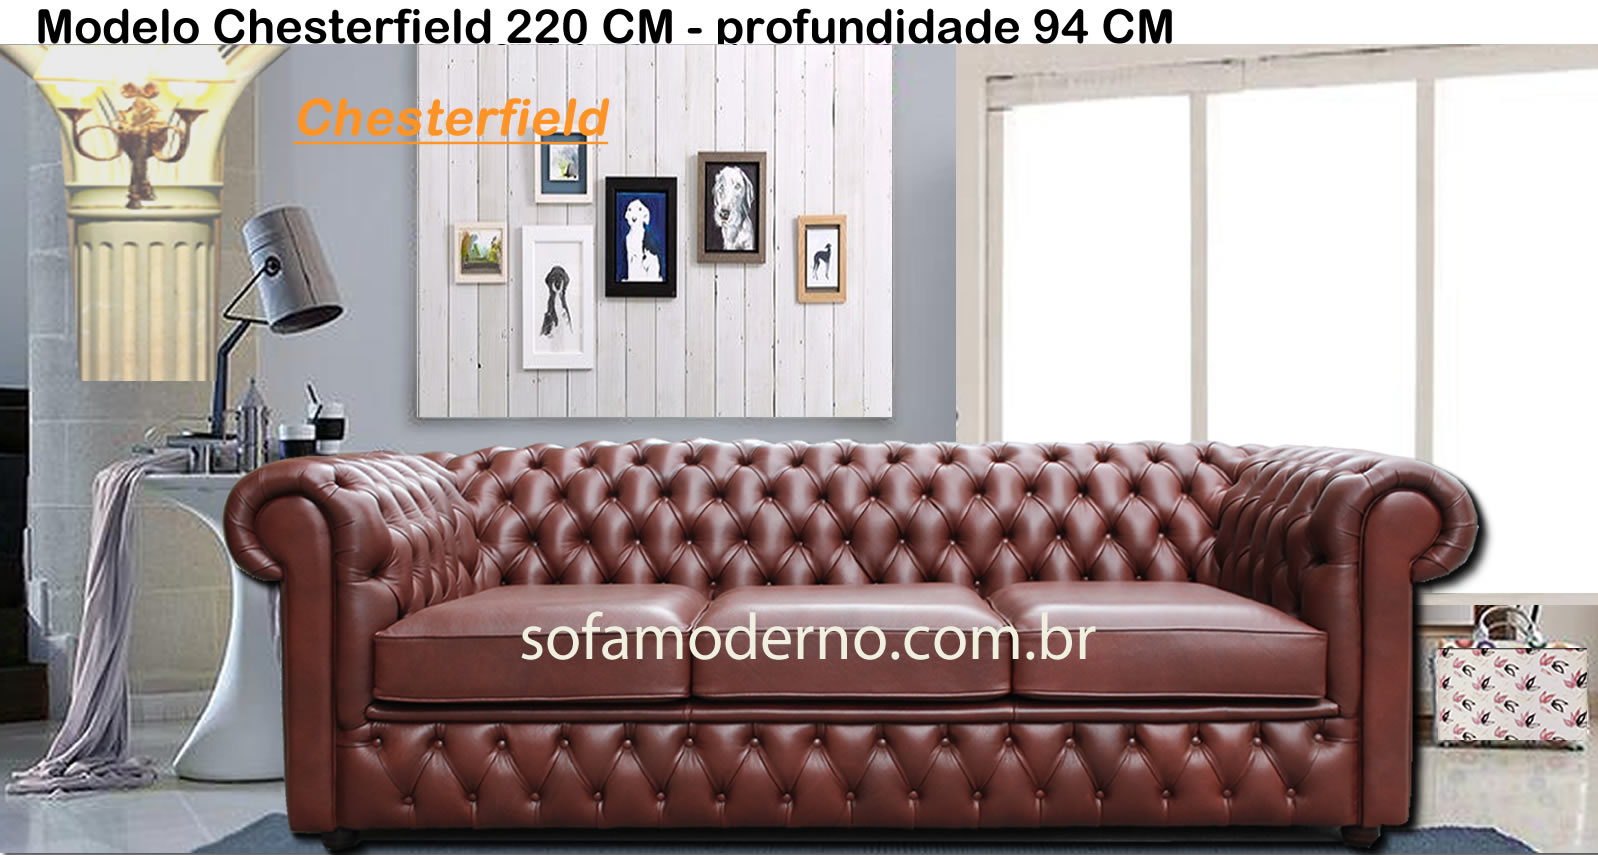 Sofá estilo Chesterfield - Couro legítimo - Couro envelhecido |  sofamoderno.com.br